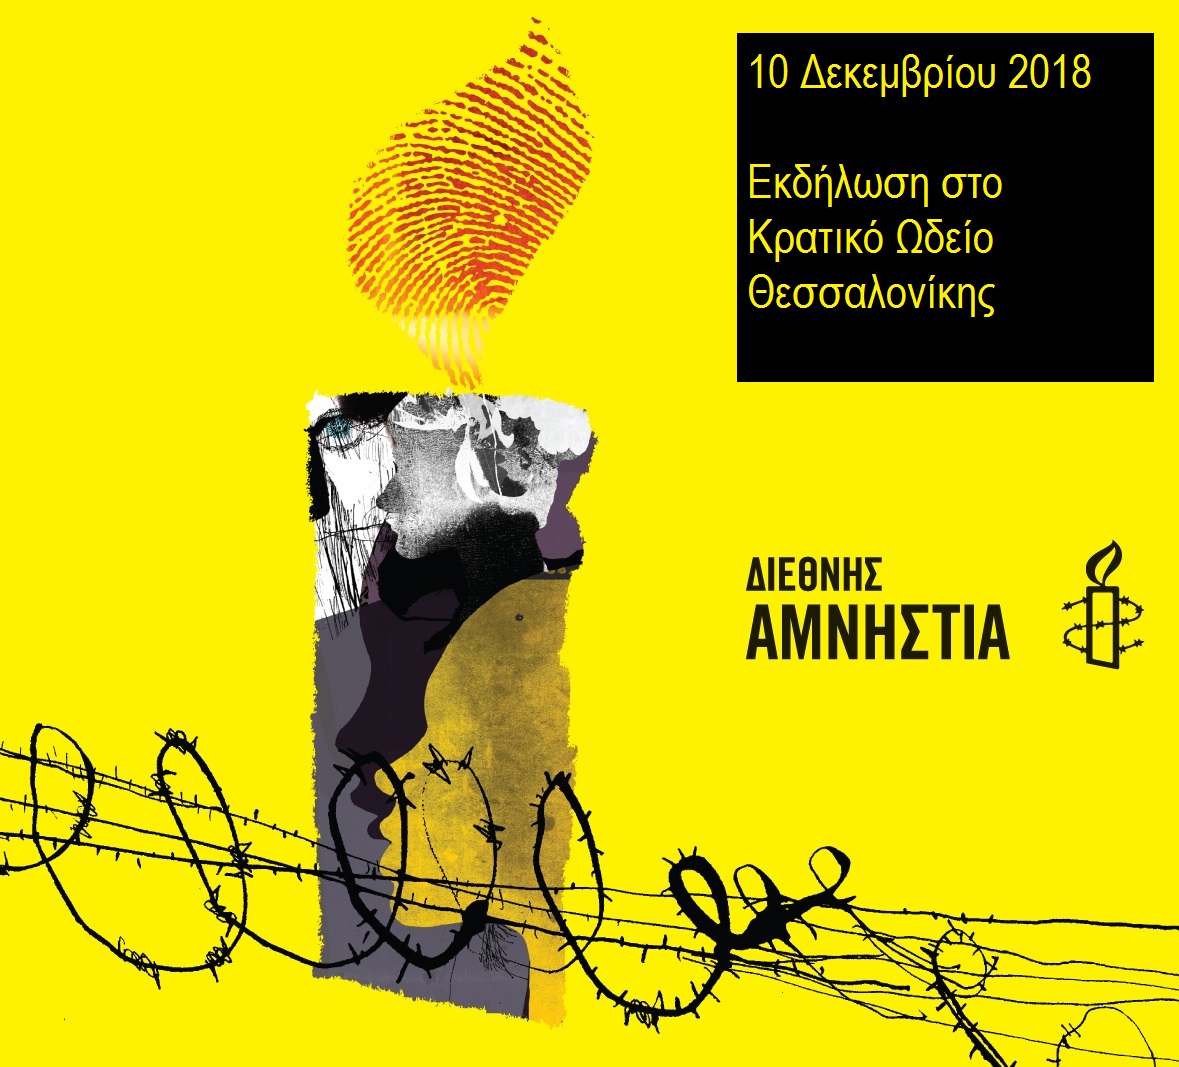  Εκδήλωση Διεθνούς Αμνηστίας στη Θεσσαλονίκη για τα Ανθρώπινα Δικαιώματα